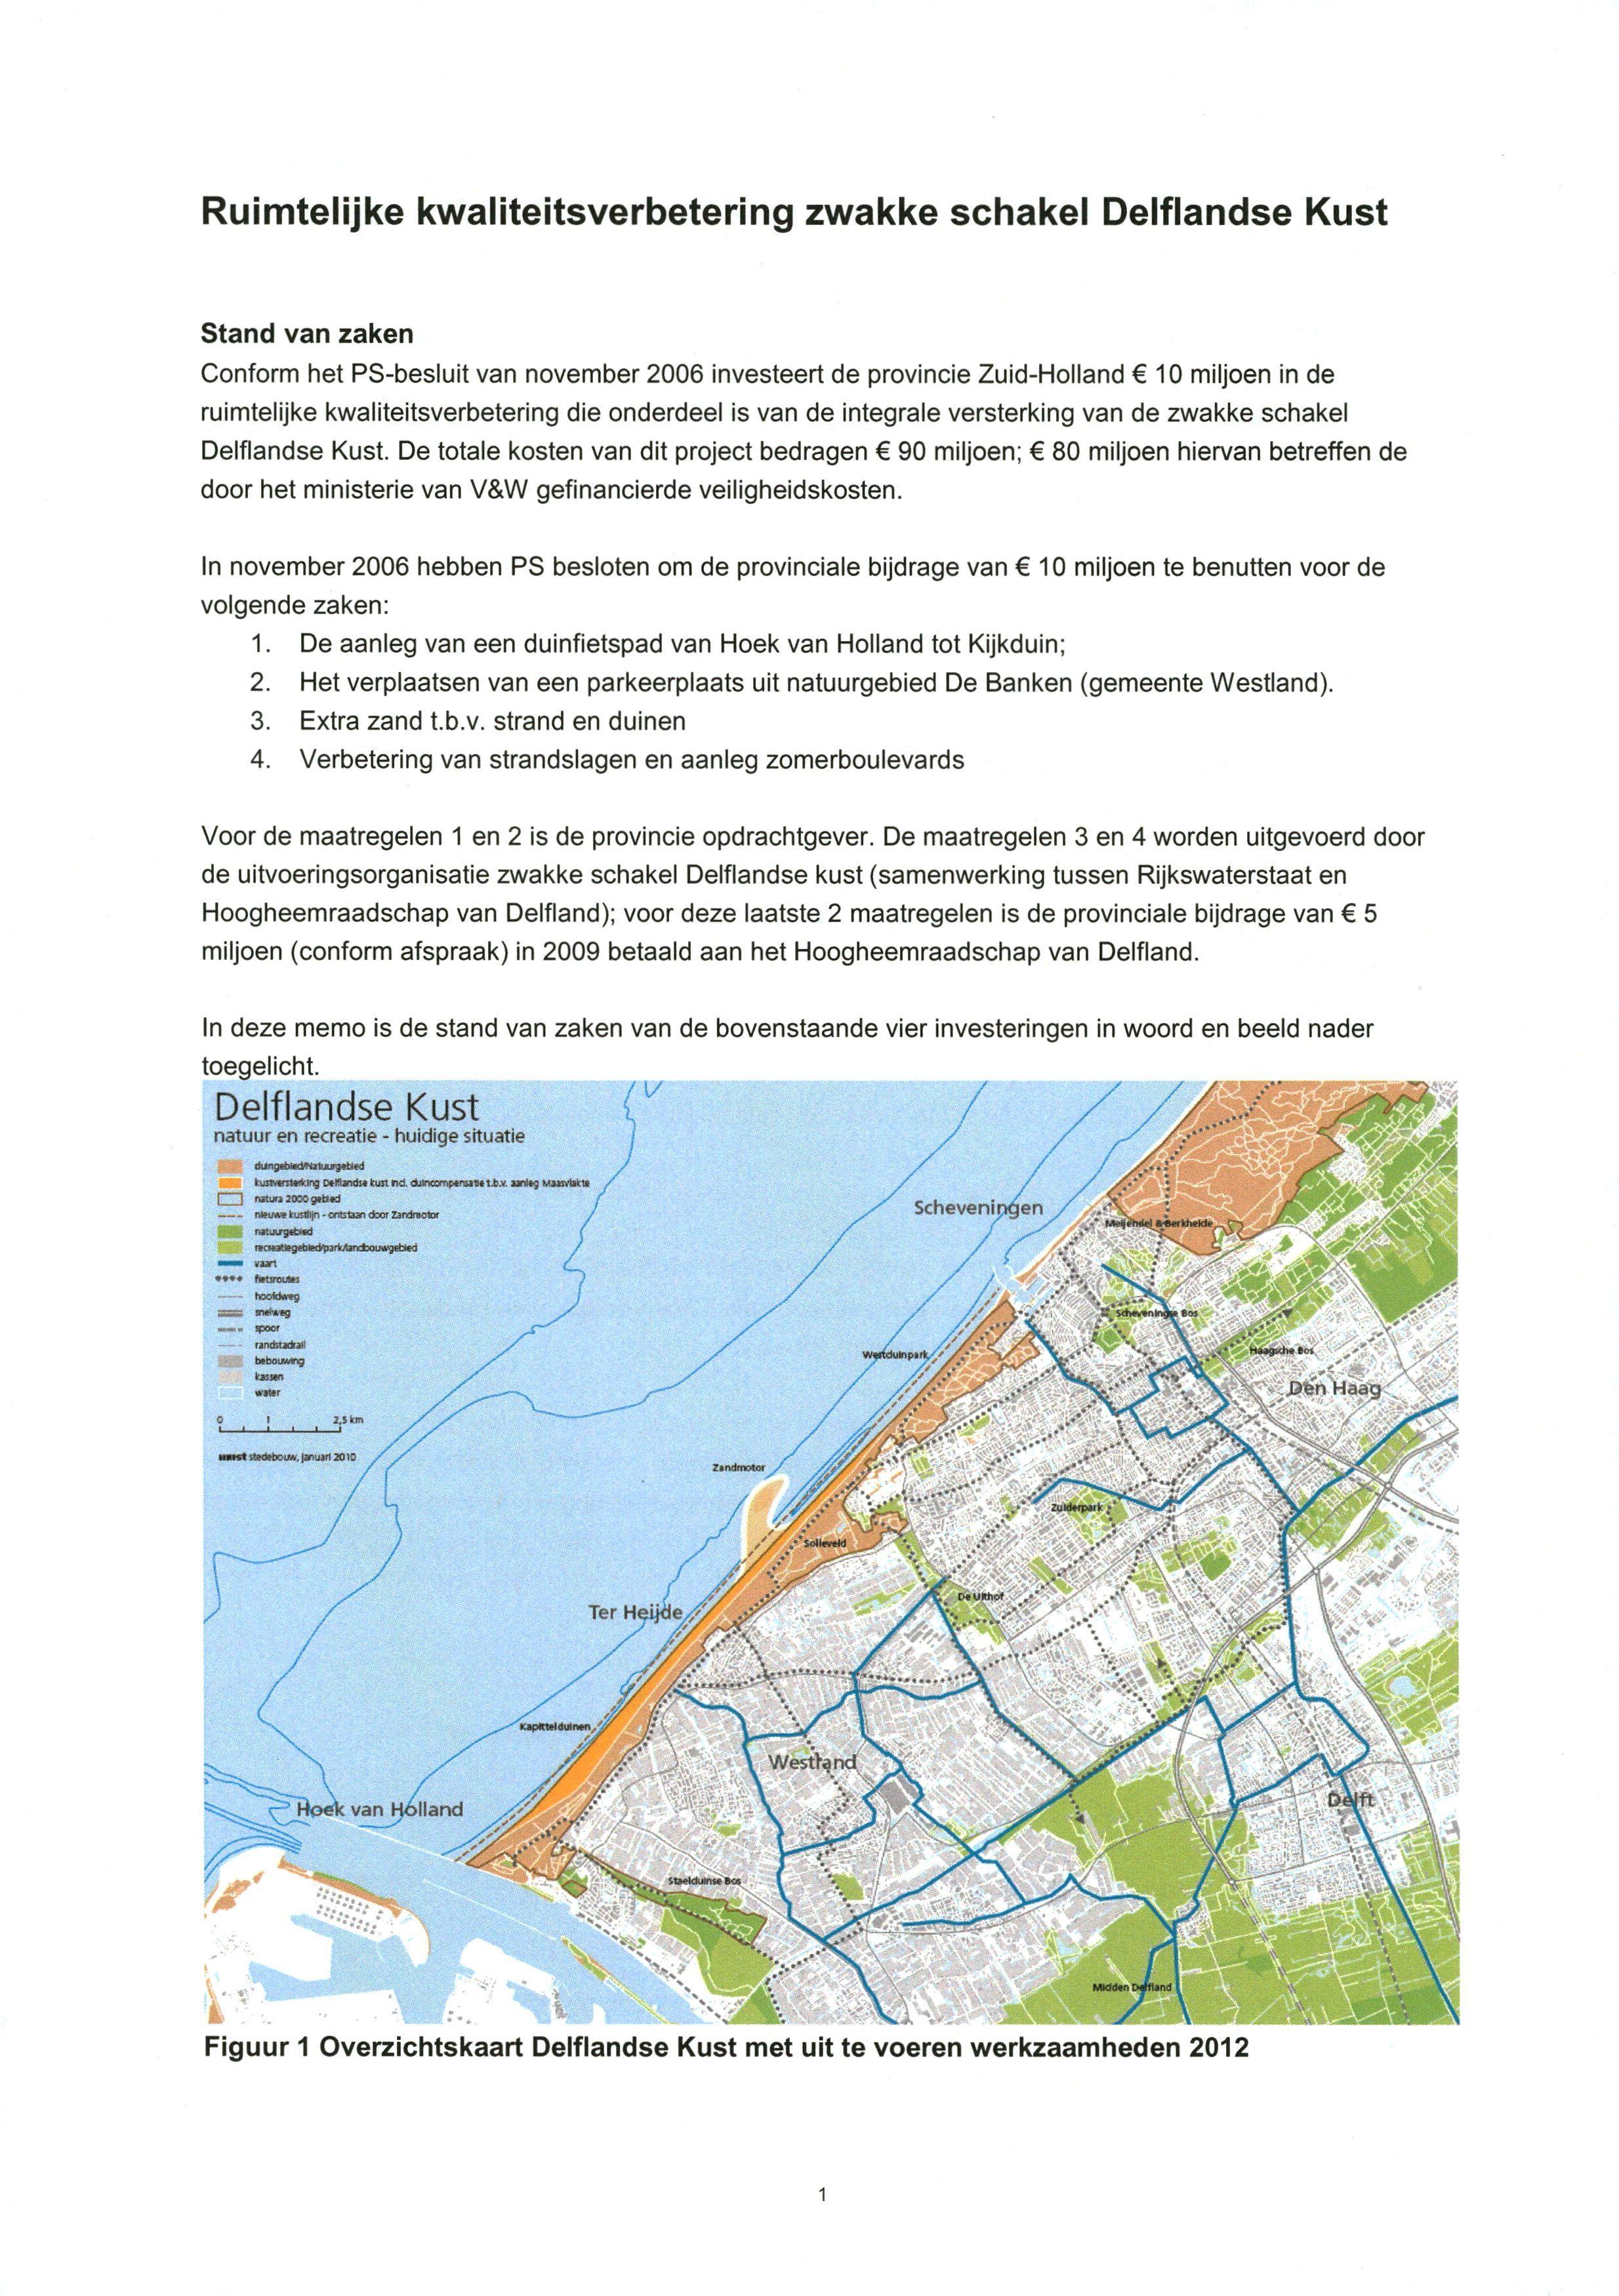 Ruimtelijke kwaiiteitsverbetering zwakke scliakel Delflandse Kust Stand van zaken Conform het PS-besluit van november 2006 Investeert de provincie Zuid-Holland 10 miljoen in de ruimtelijke